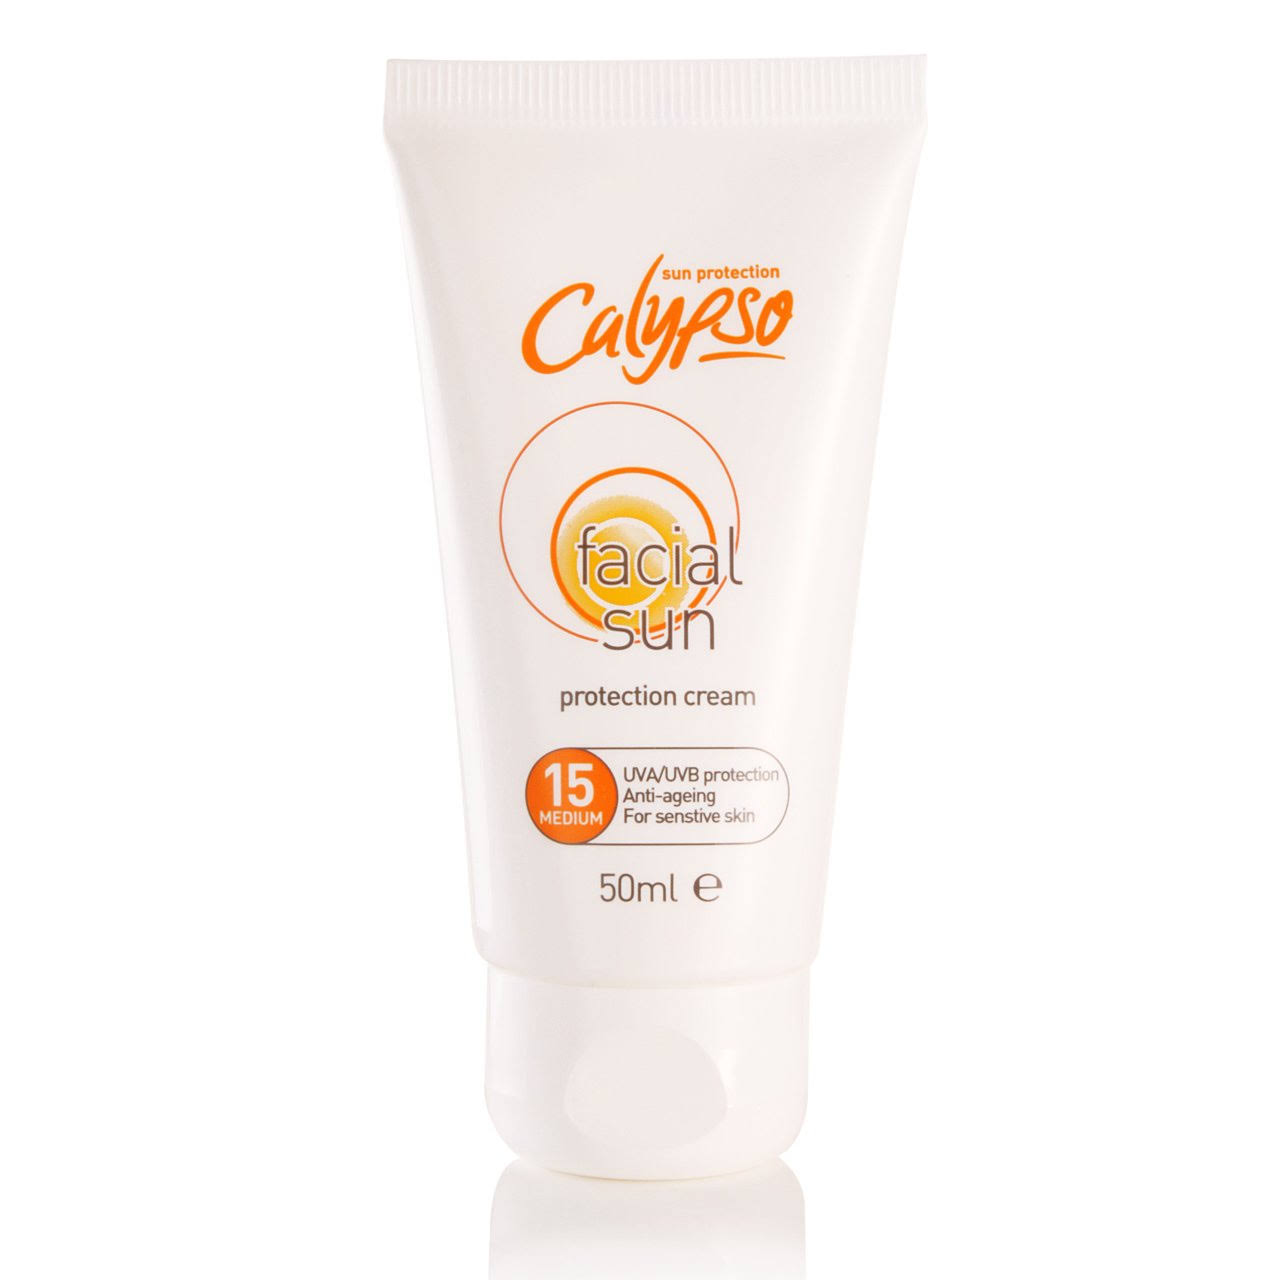 Calypso Facial Sun Protection Cream - 50ml